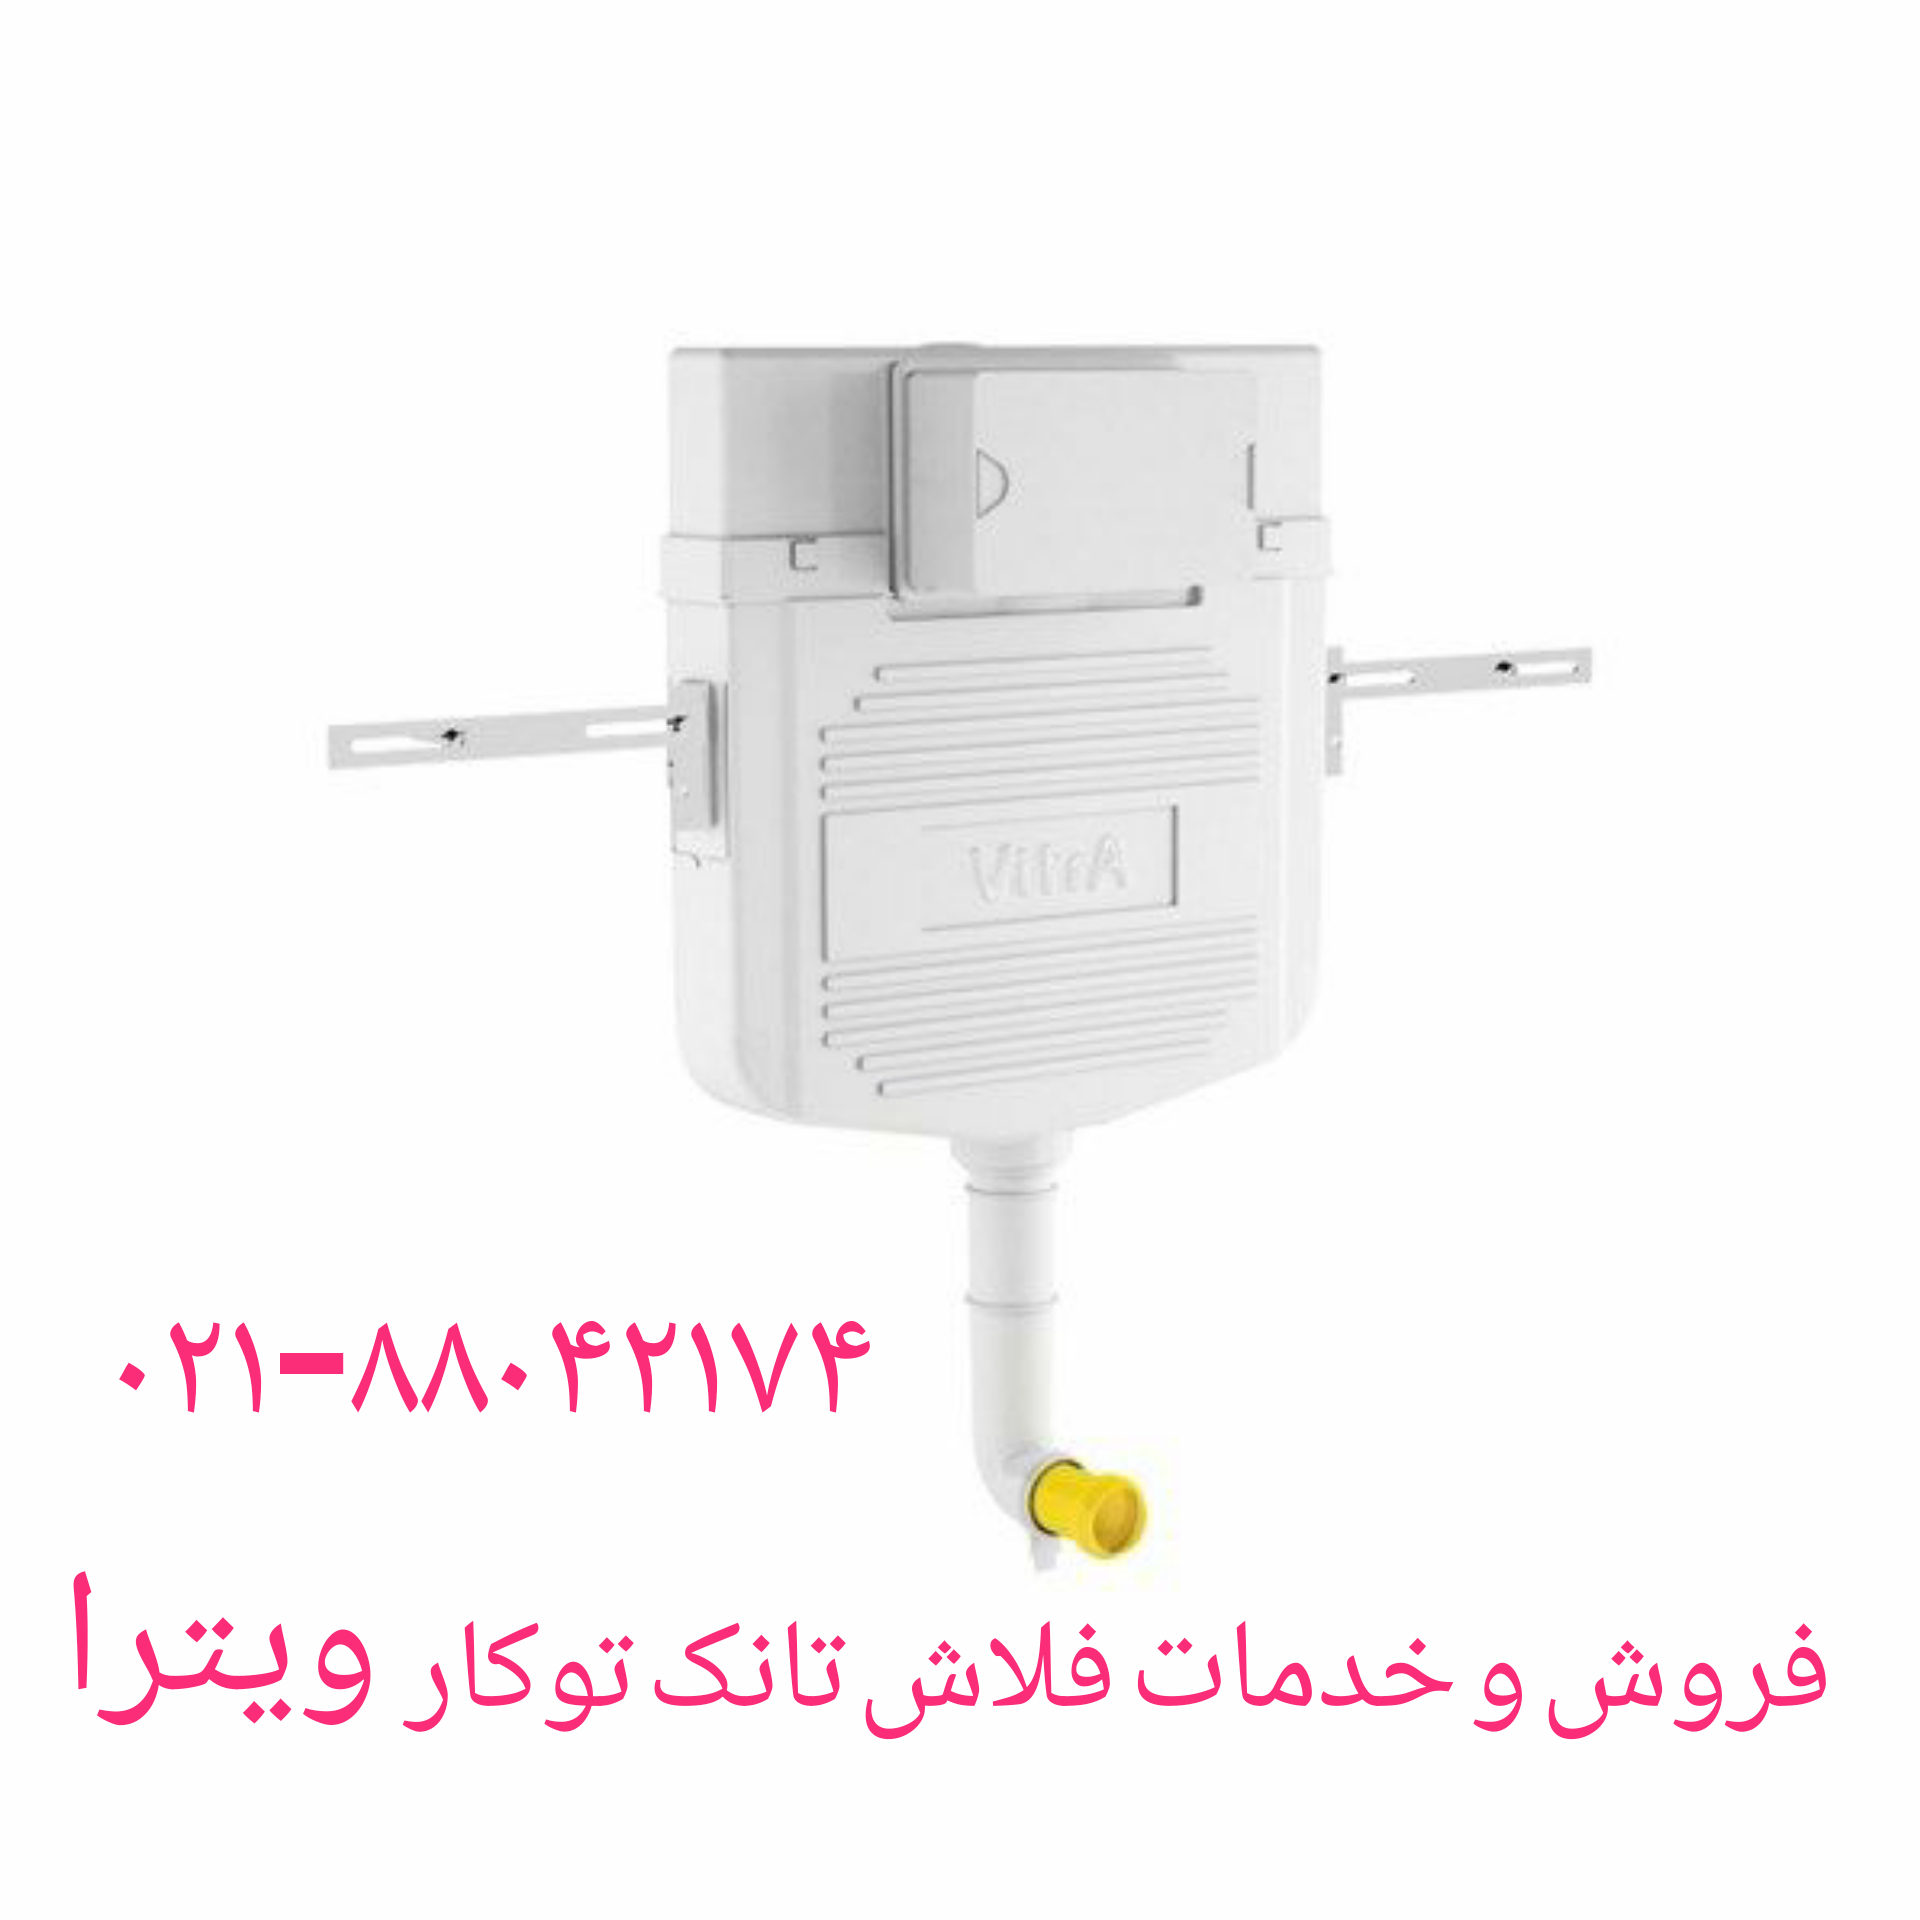 فروش کلید فلاش تانک توکار ویترا 09121507825// فروش حضوری در تهران